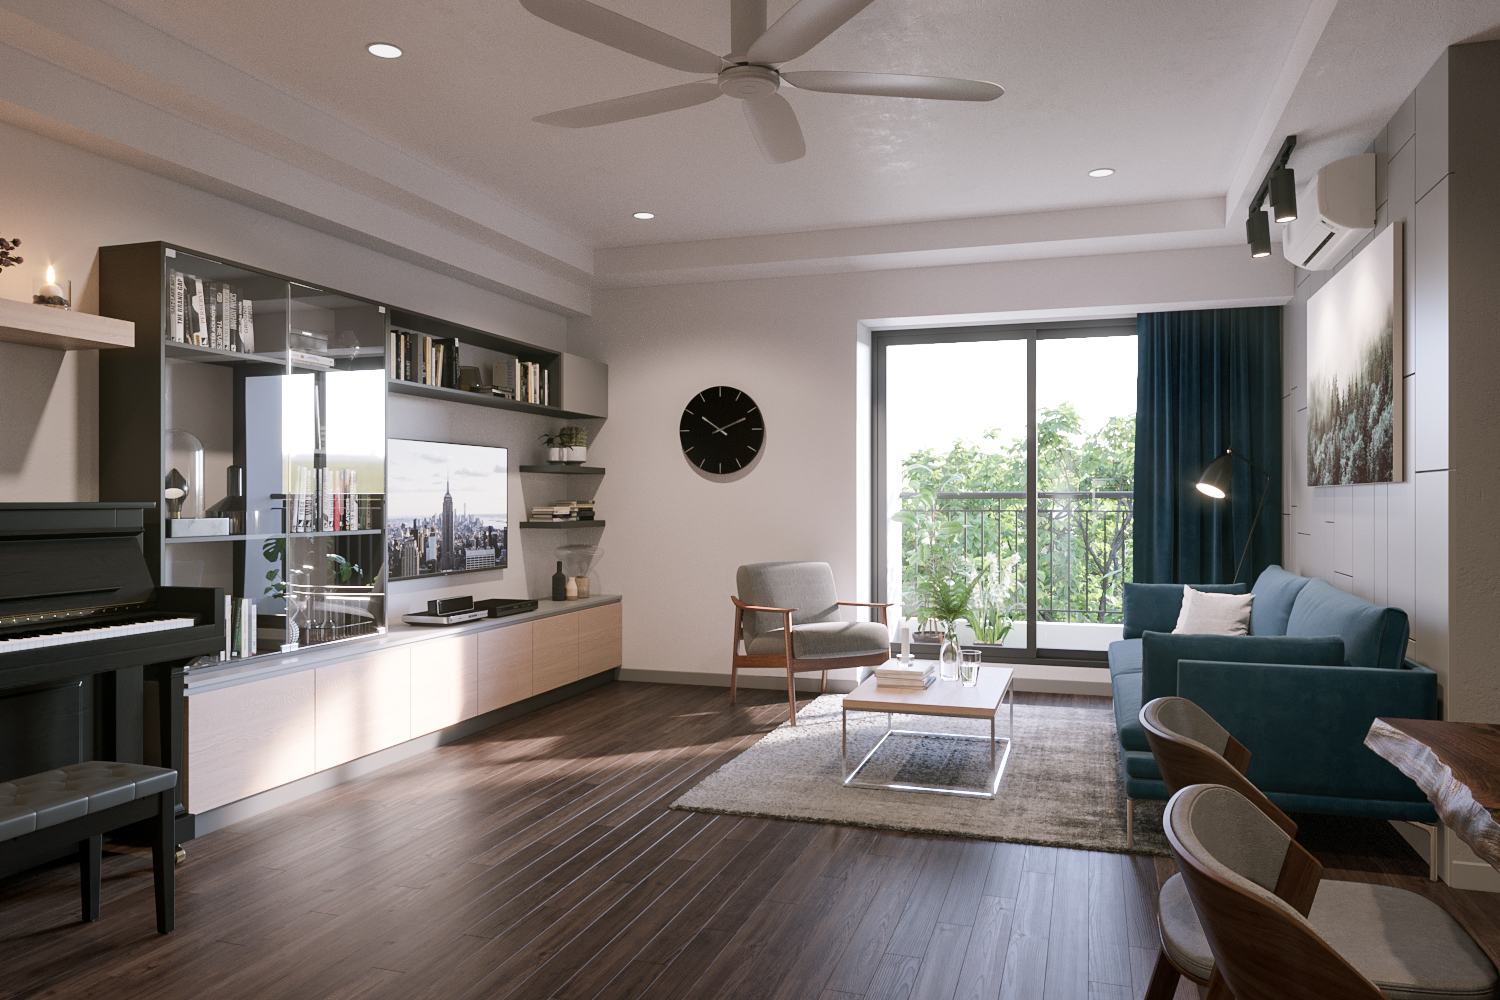 Ngỡ ngàng với diện mạo mới của căn hộ chung cư 100m² ở Ecolifety Tây Hồ sau khi được kiến trúc sư tư vấn cải tạo với chi phí 187 triệu - Ảnh 6.